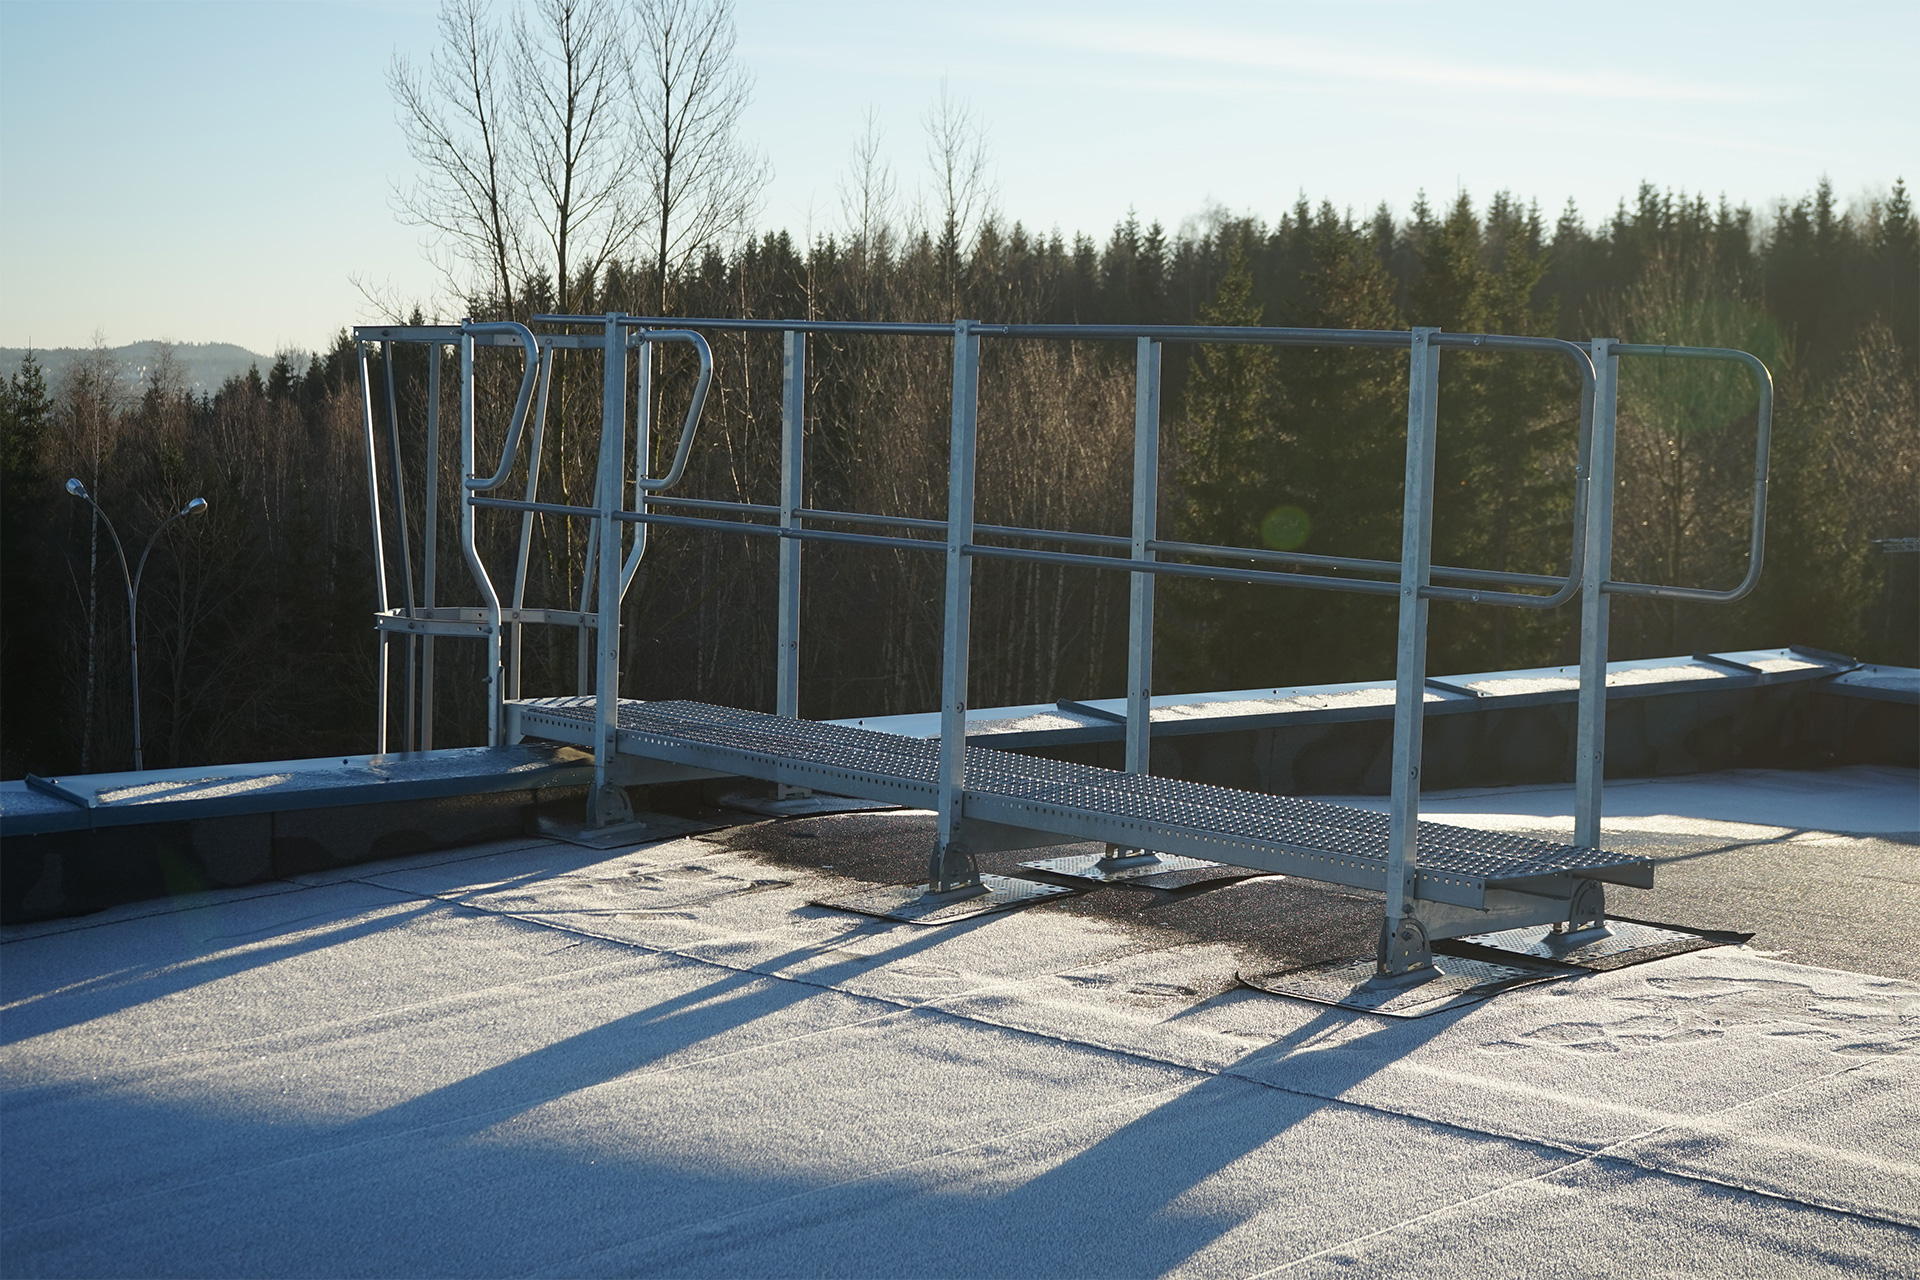 Gesimsbro er en nyhet fra Weland som bidrar til sikker adkomst 2m inn på taket